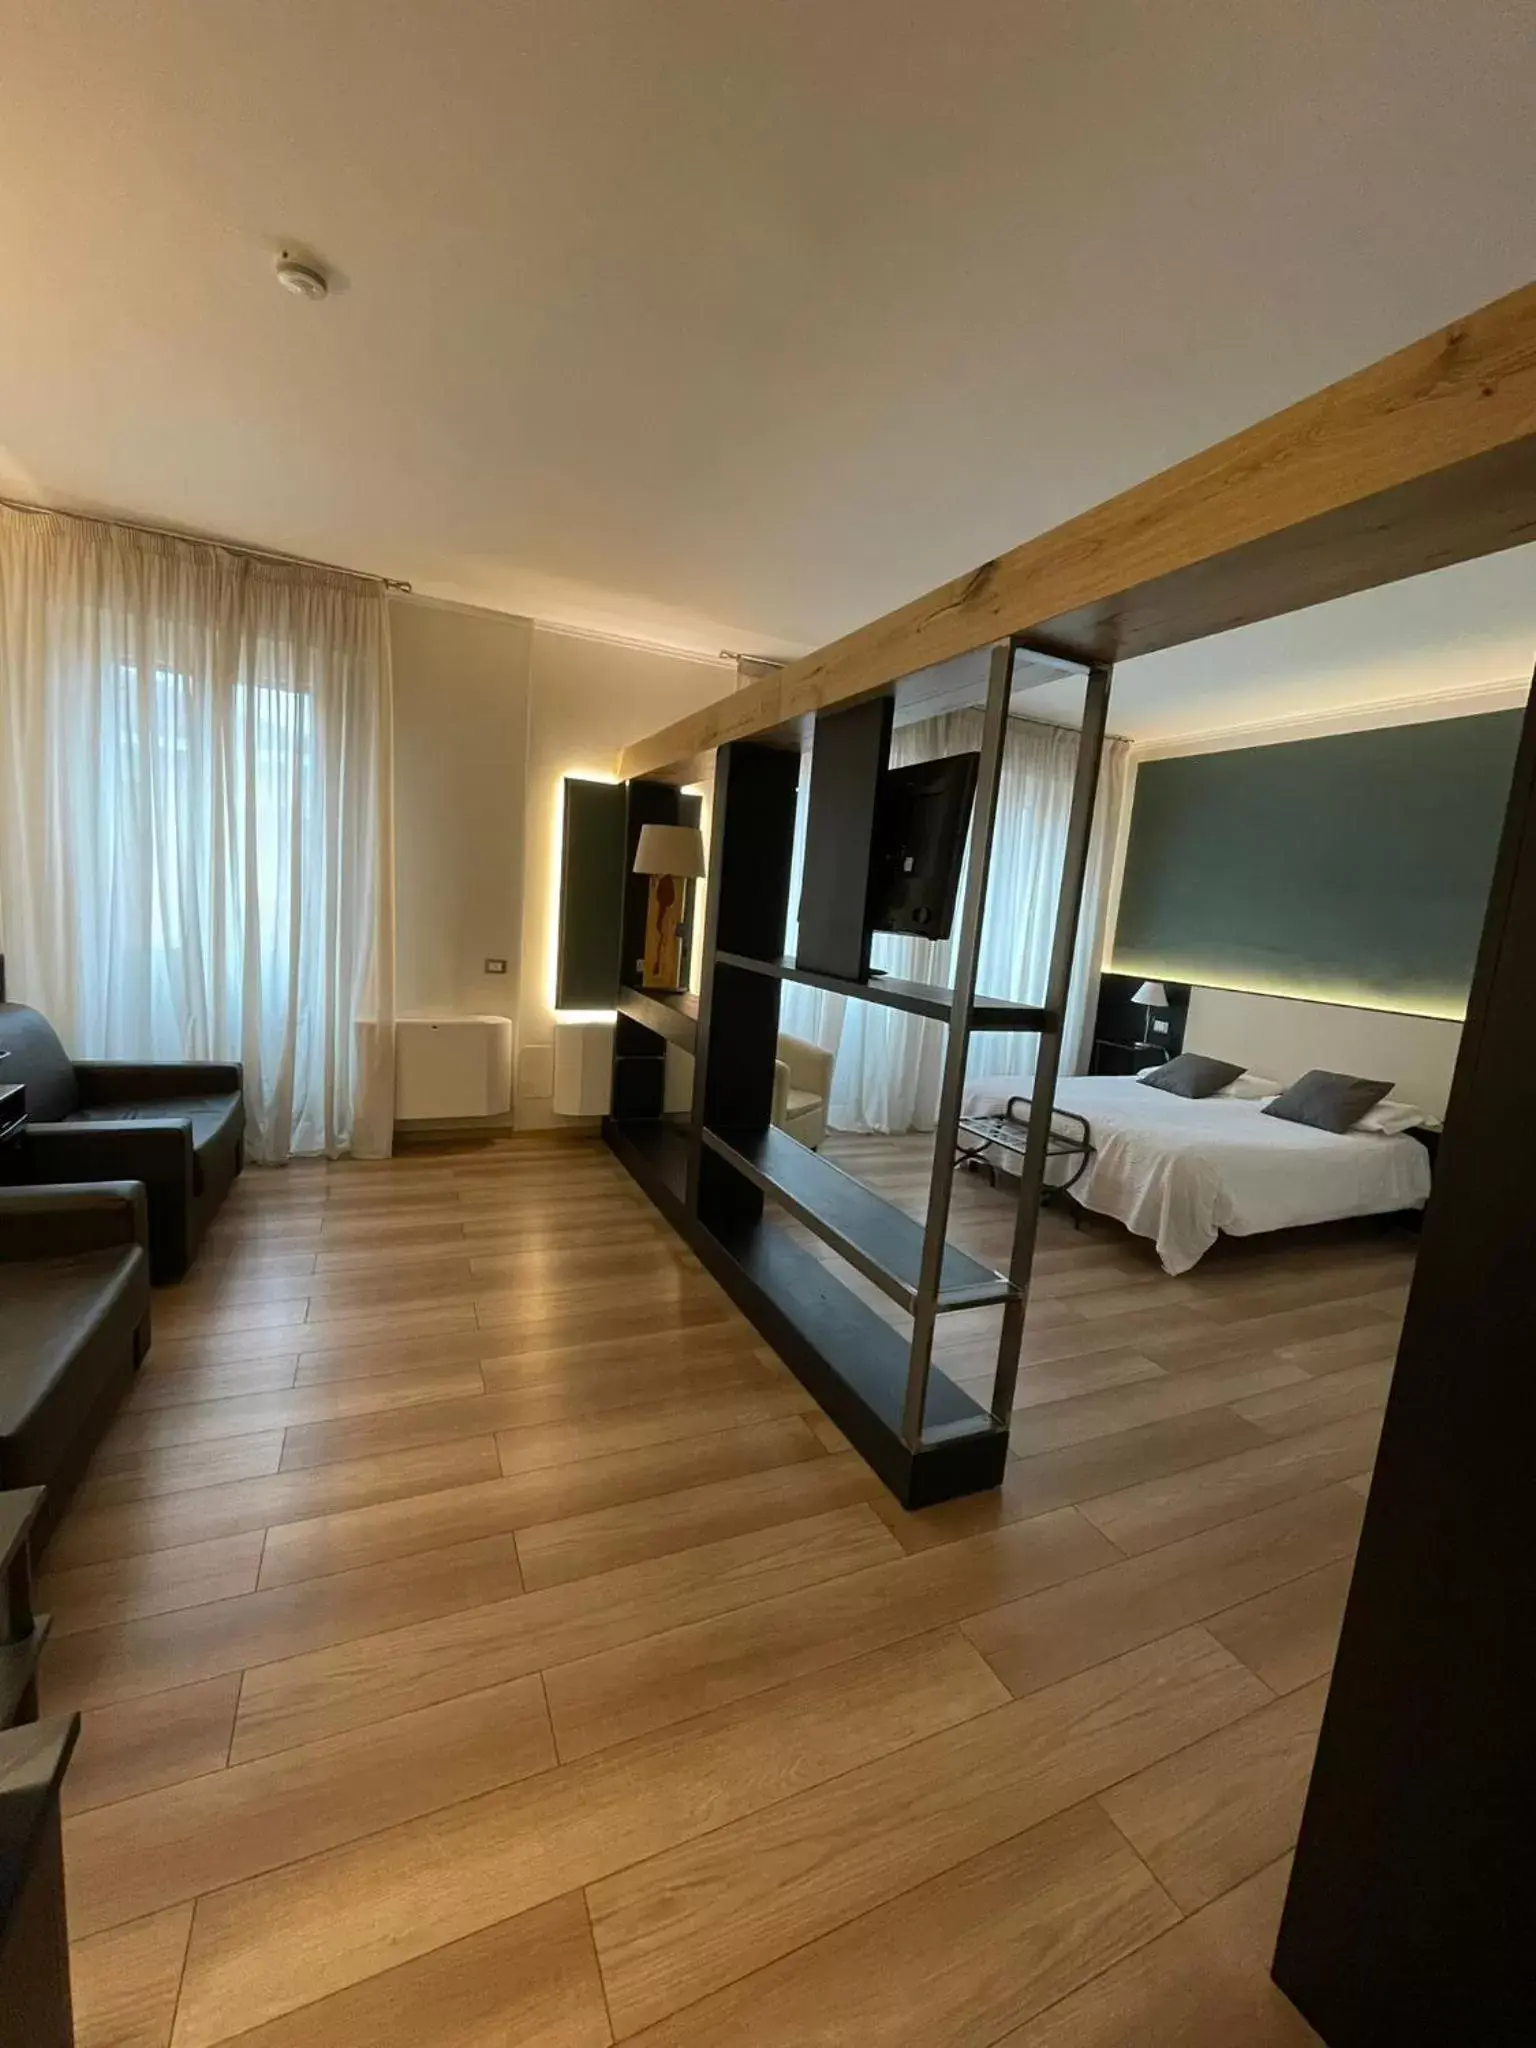 Bedroom in Hotel Italia